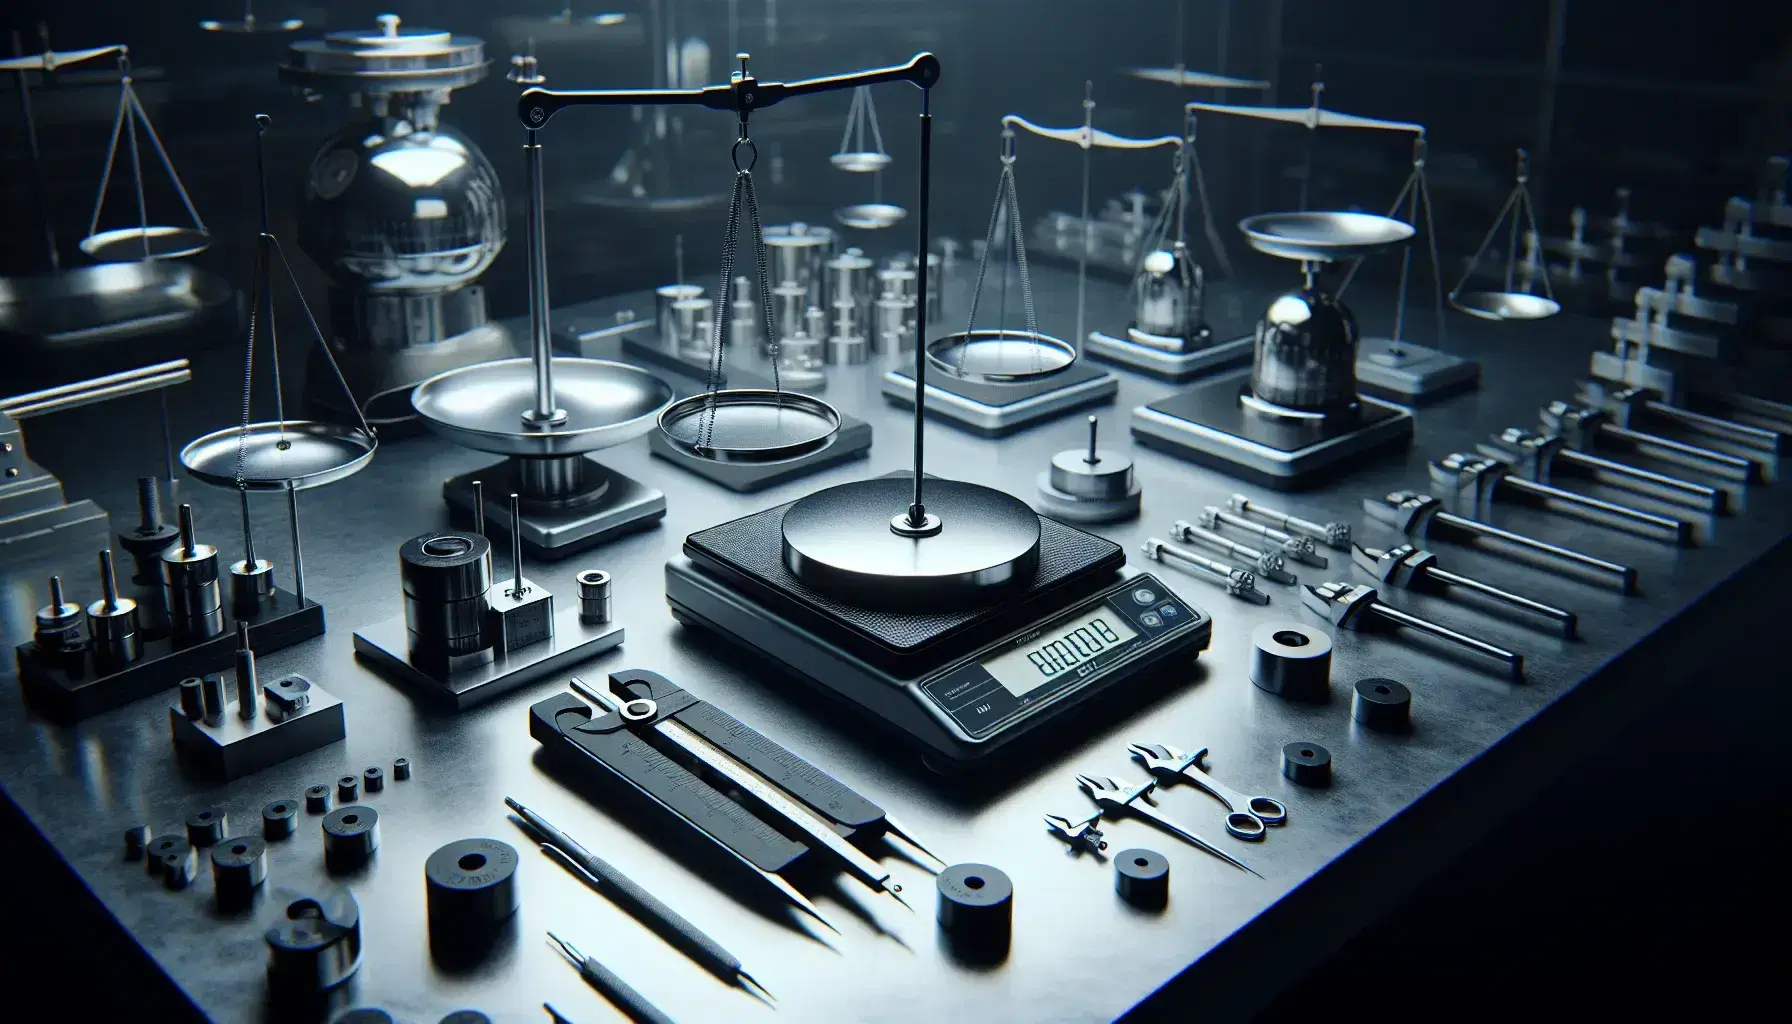 Bilance di precisione assortite su tavolo da laboratorio con pesi di calibrazione e strumenti di misura, in ambiente professionale.